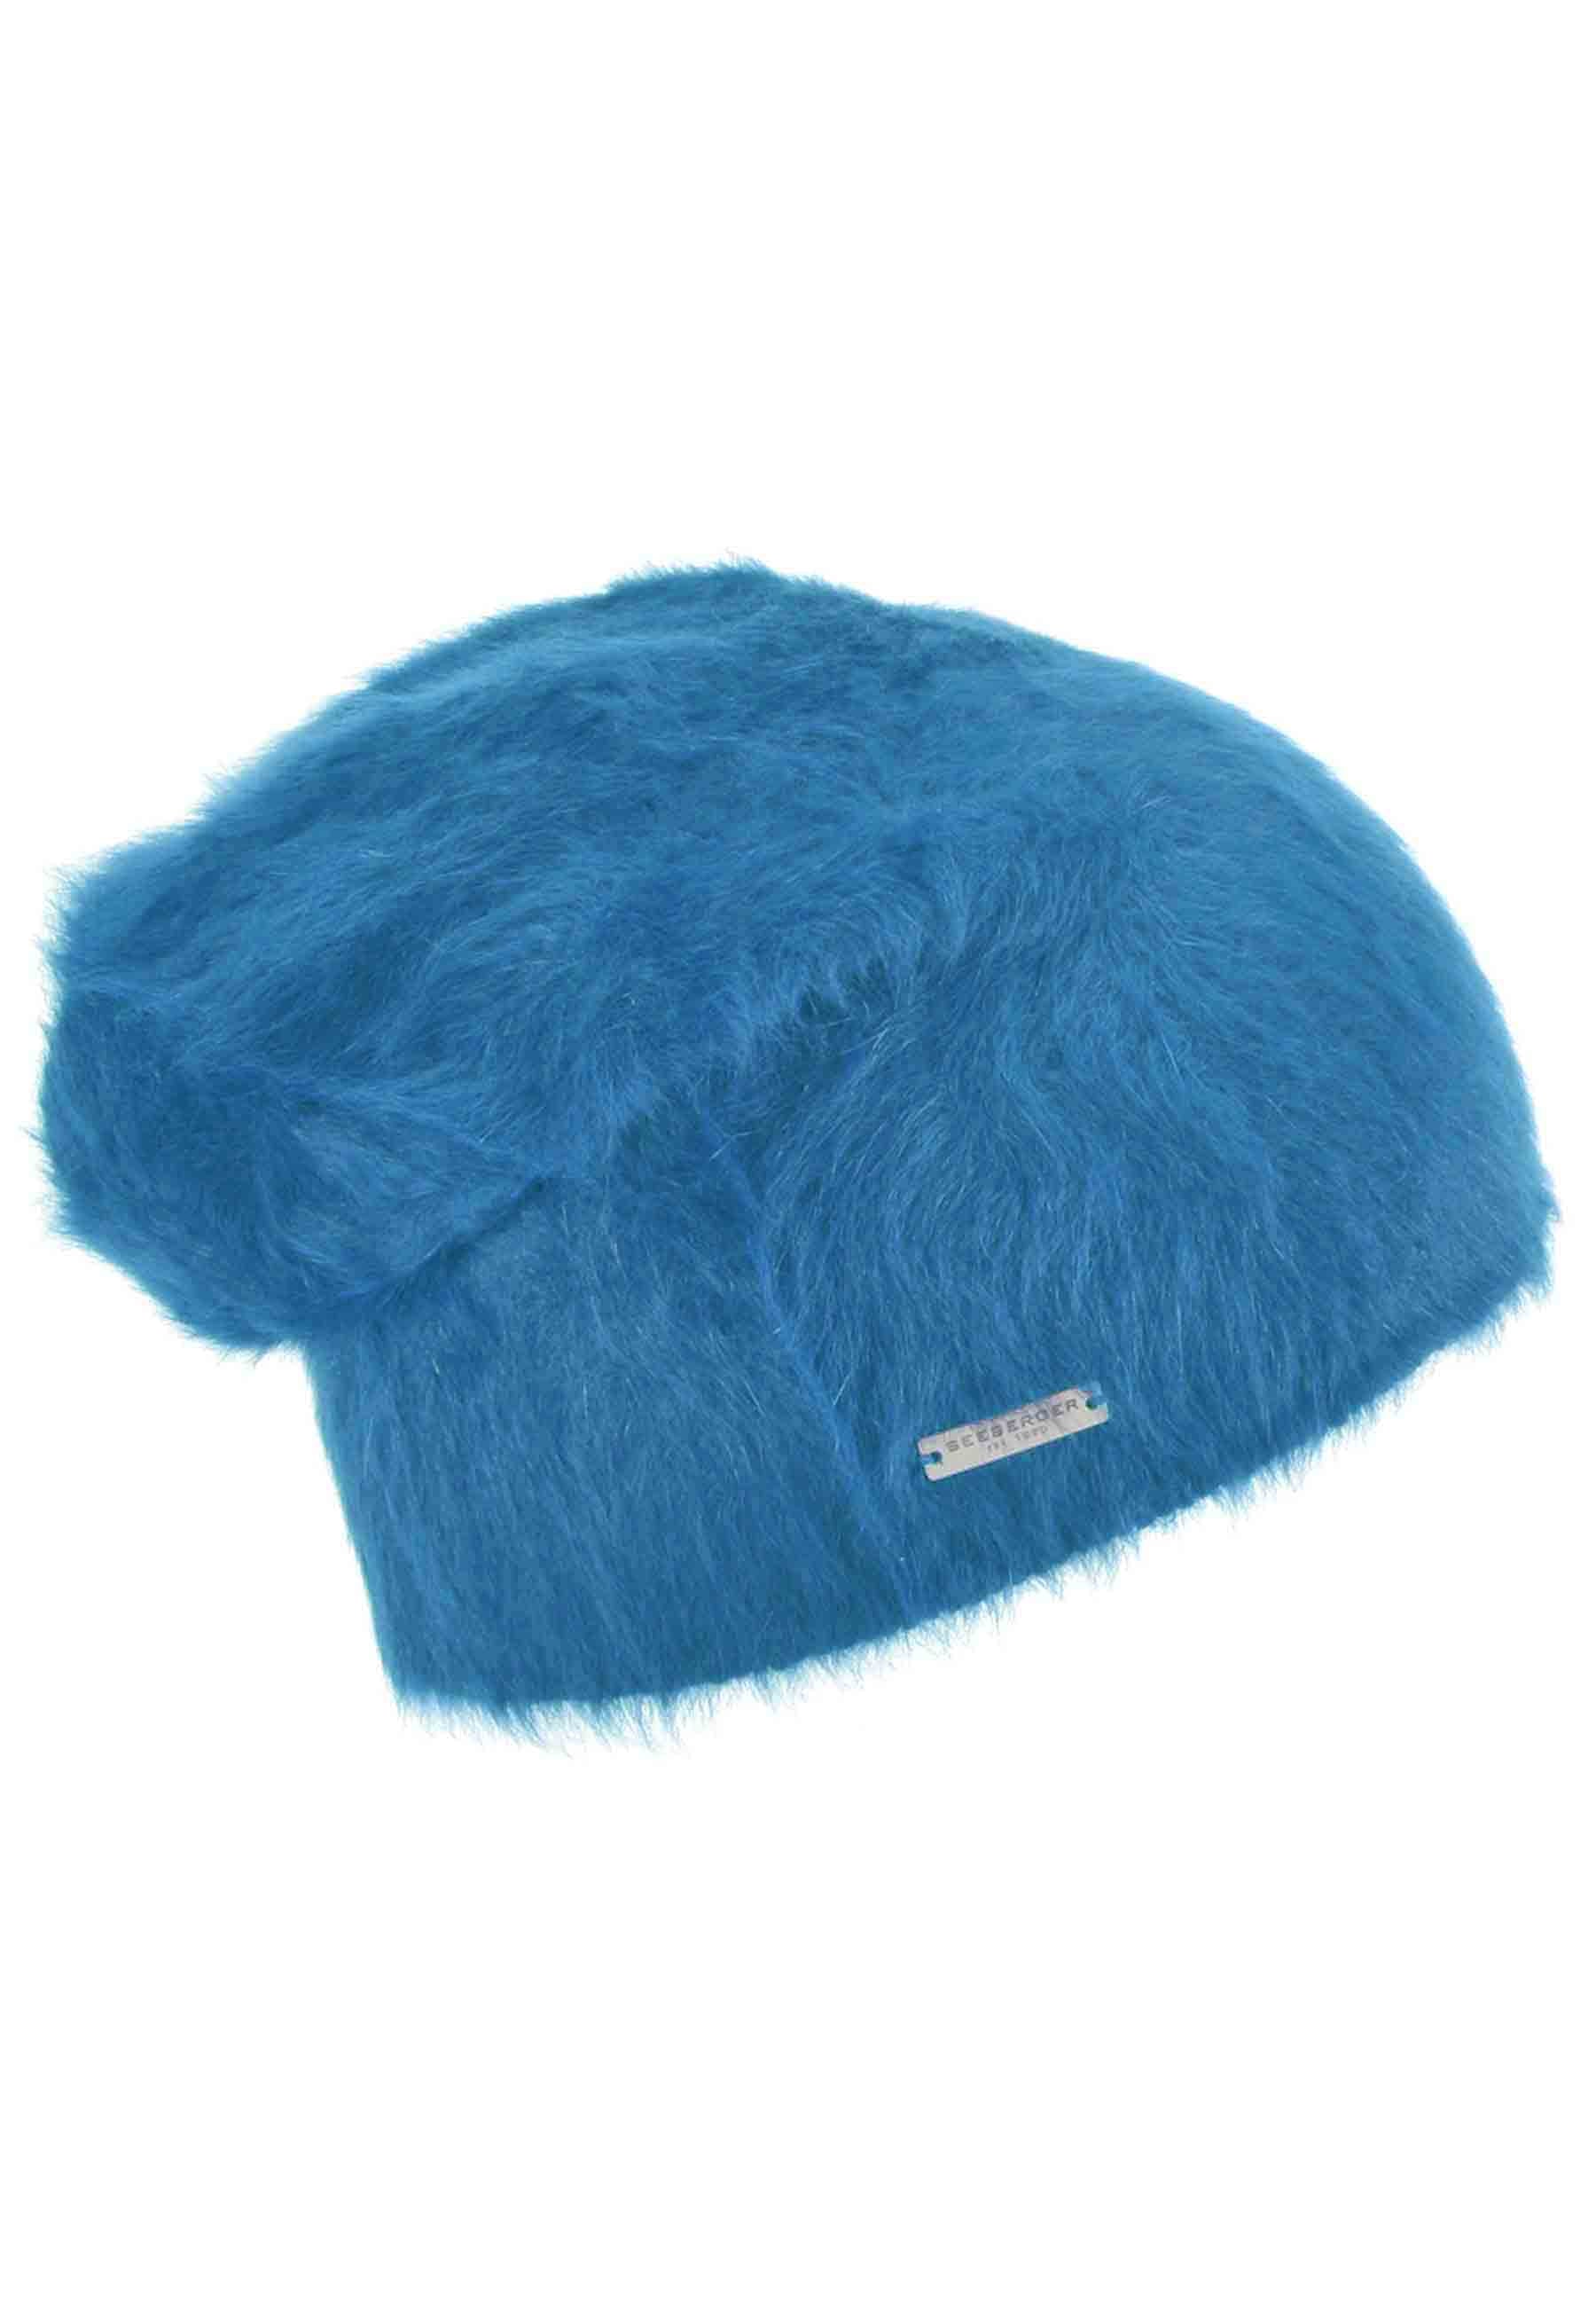 Copricapo in lana d'angora azzurro